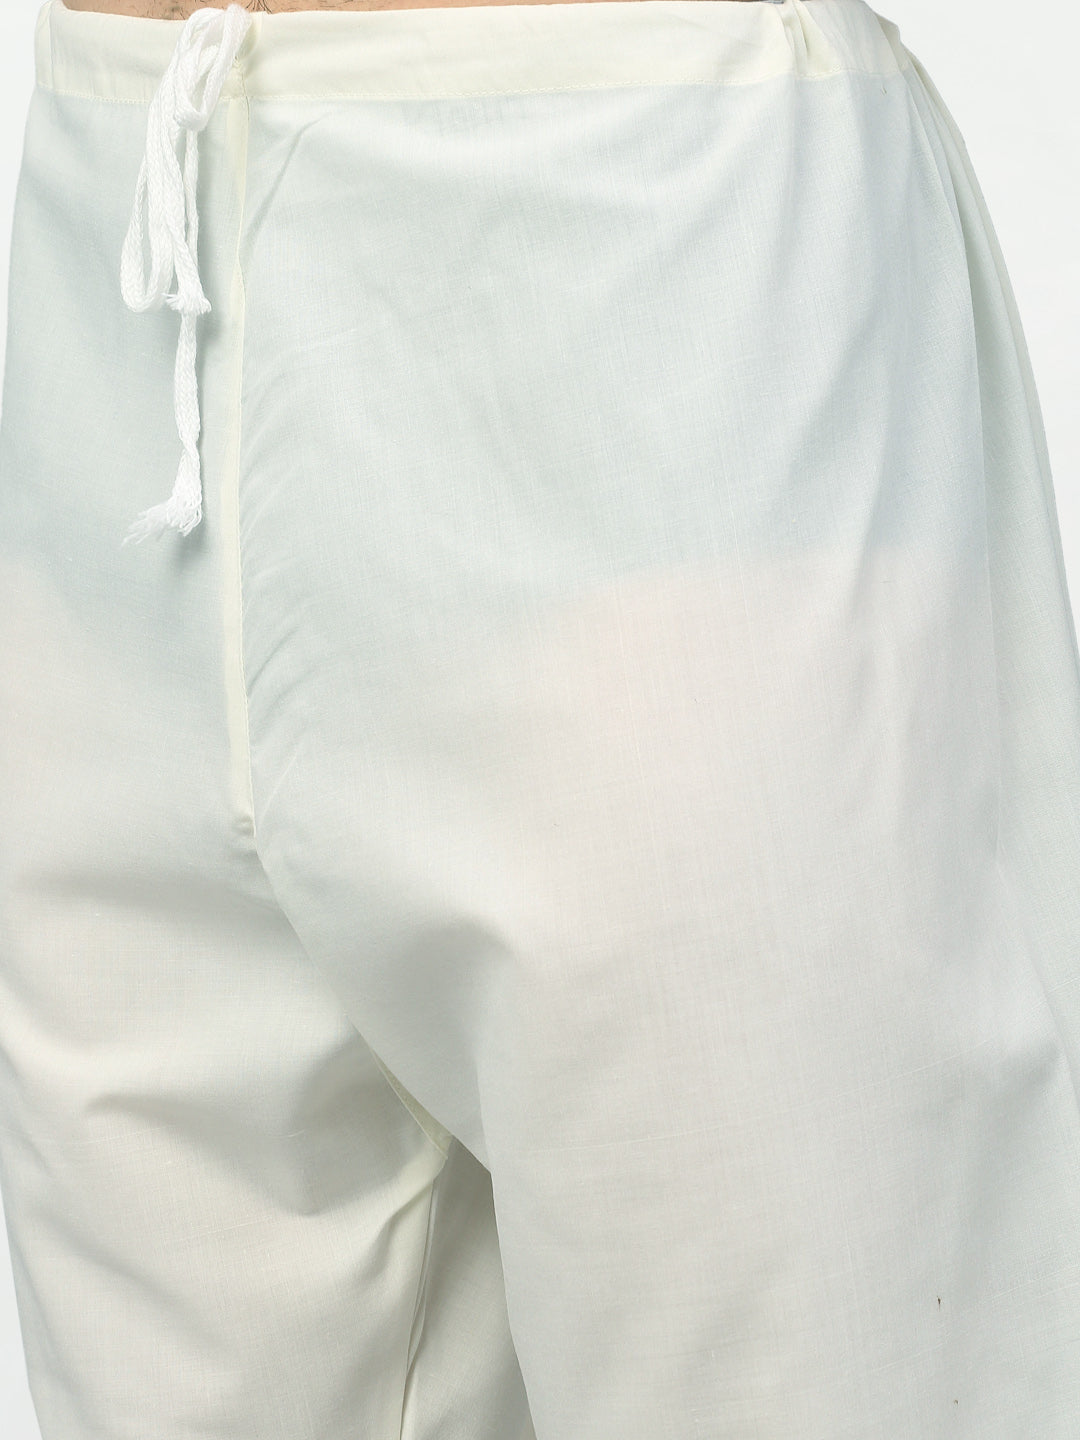 Jompers Men's Sky Printed Cotton Kurta Payjama Sets